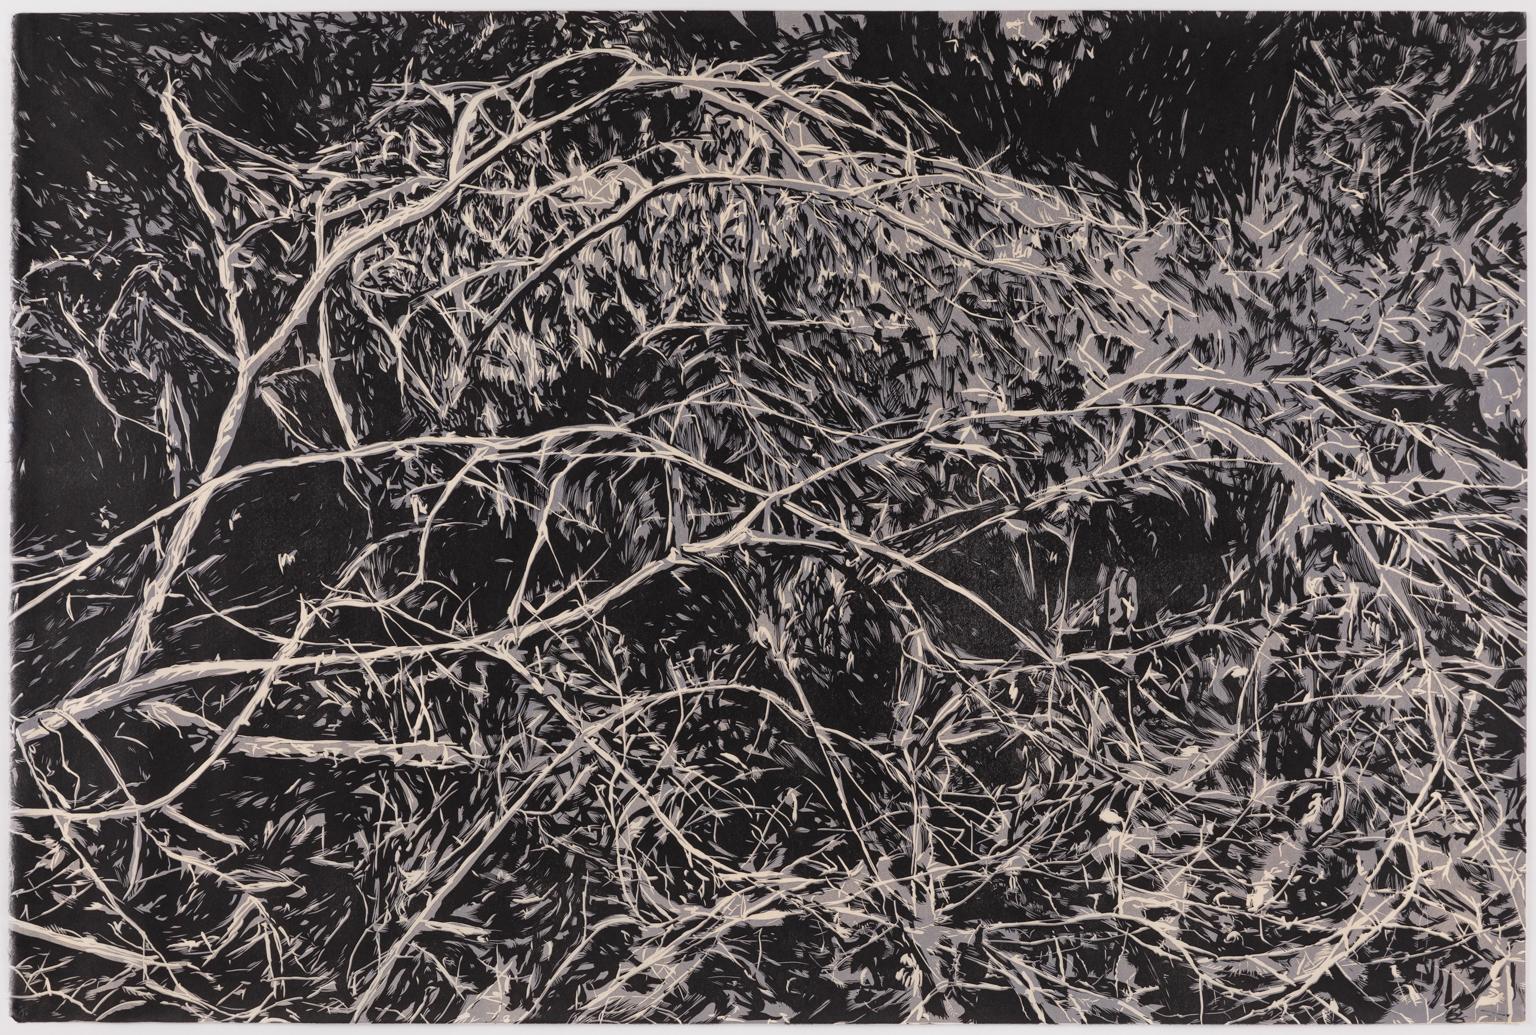 Hannah Skoonberg Landscape Print – Whirl - Großer Druck von verschlungenen Zweigen mit Blattwerk in Schwarz und Grau